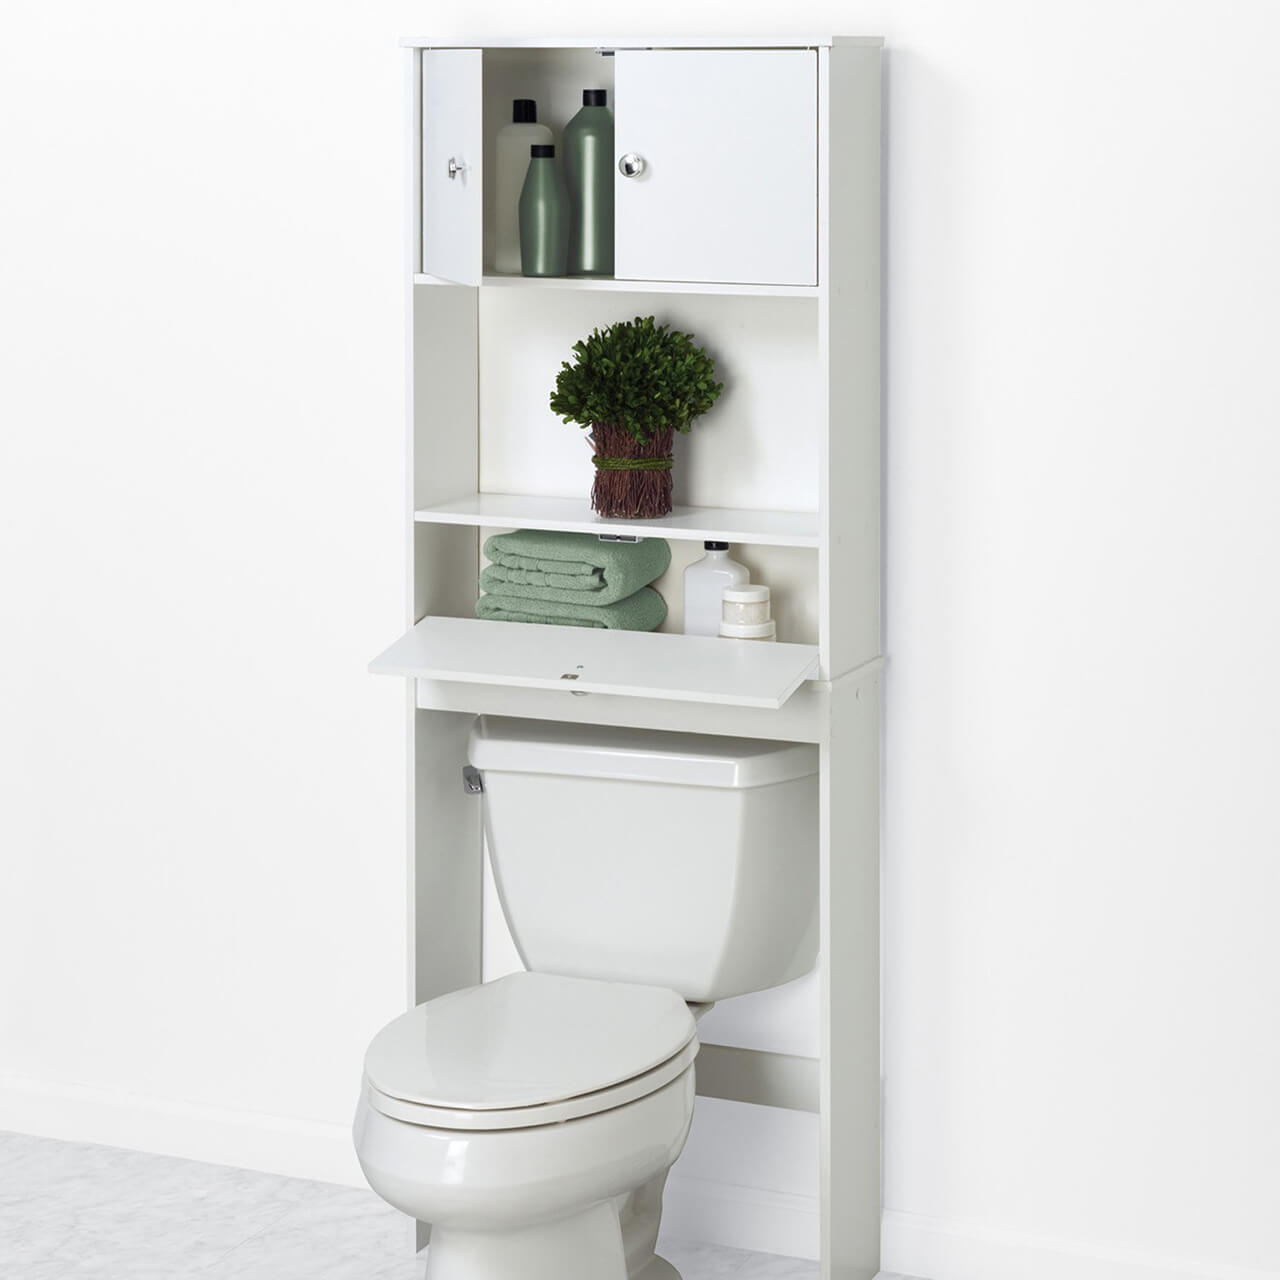 Best Bathroom Storage : Ahead, 25 clever bathroom storage ideas that'll ...